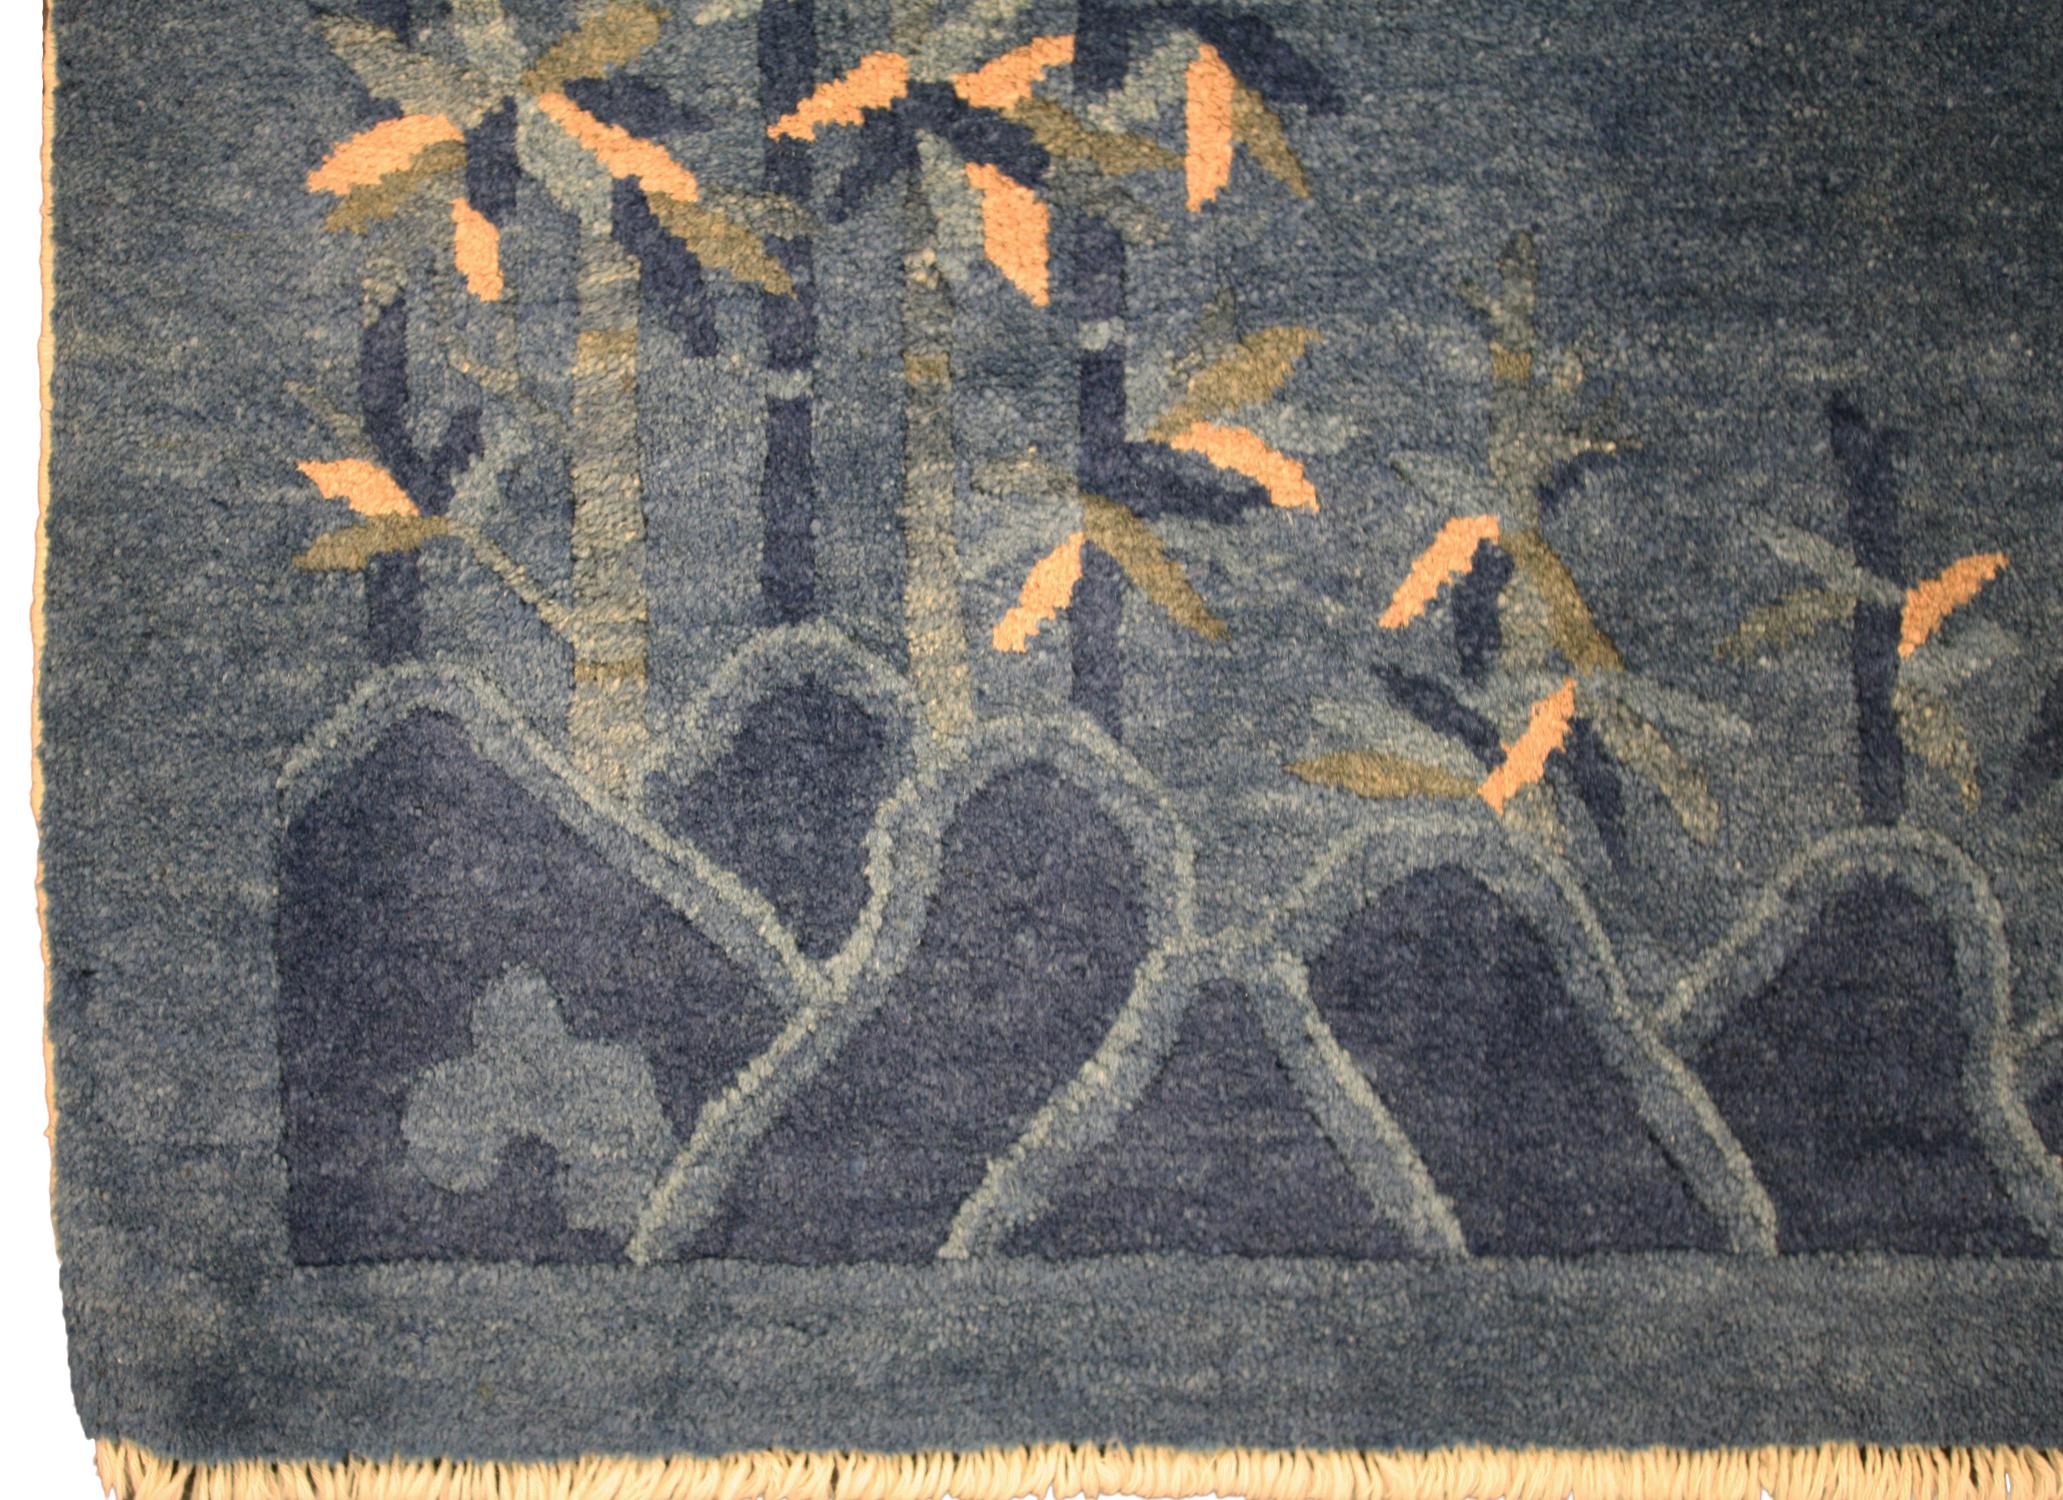 Dies ist ein Peking-Teppich gewebt in China während des ersten Viertels des 20. Jahrhunderts ca. 1900 - 1920er Jahre und misst 163 x 94CM in der Größe. Dieser Teppich hat ein sehr einzigartiges Design, das keine Grenzen, wie enthält und besteht aus